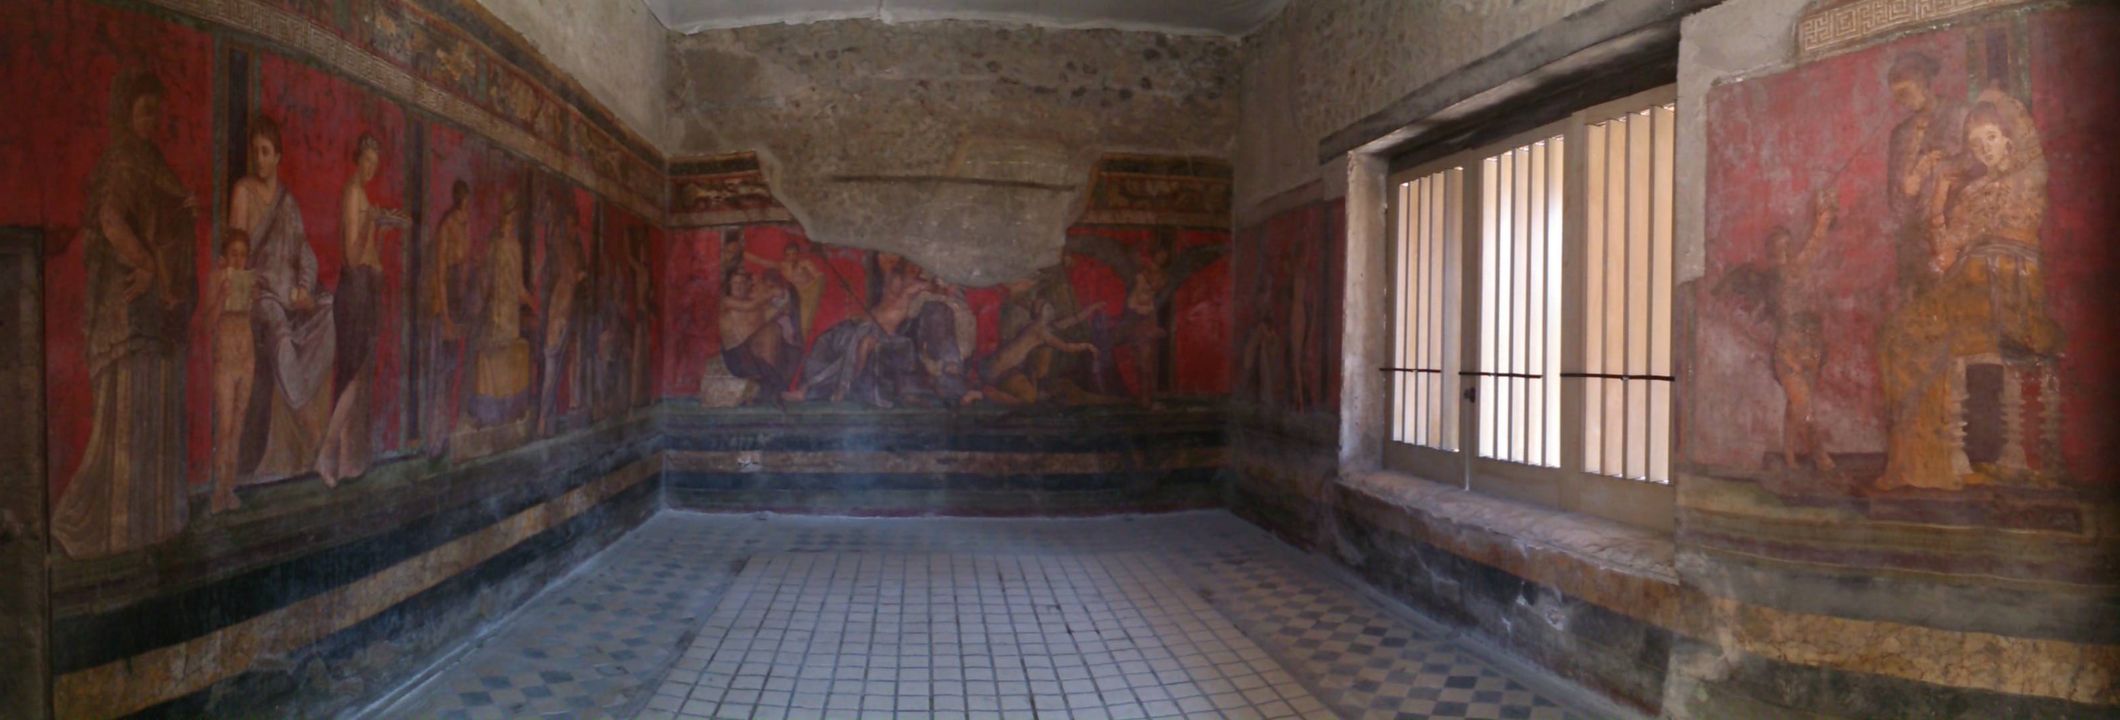 Pompei - Affreschi nella Villa dei misteri ovvero della prostituzione